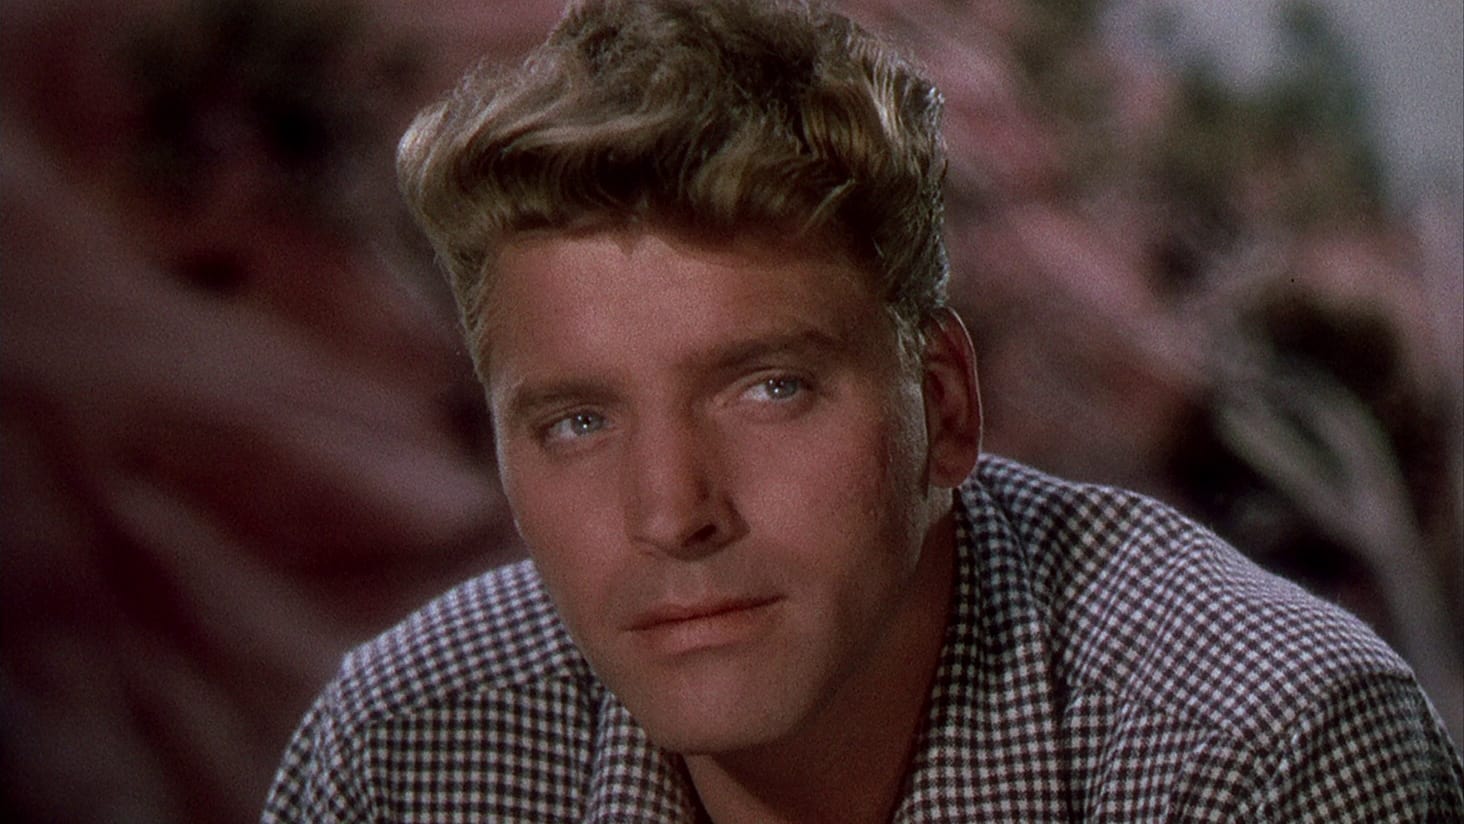 Desert Fury (1947)